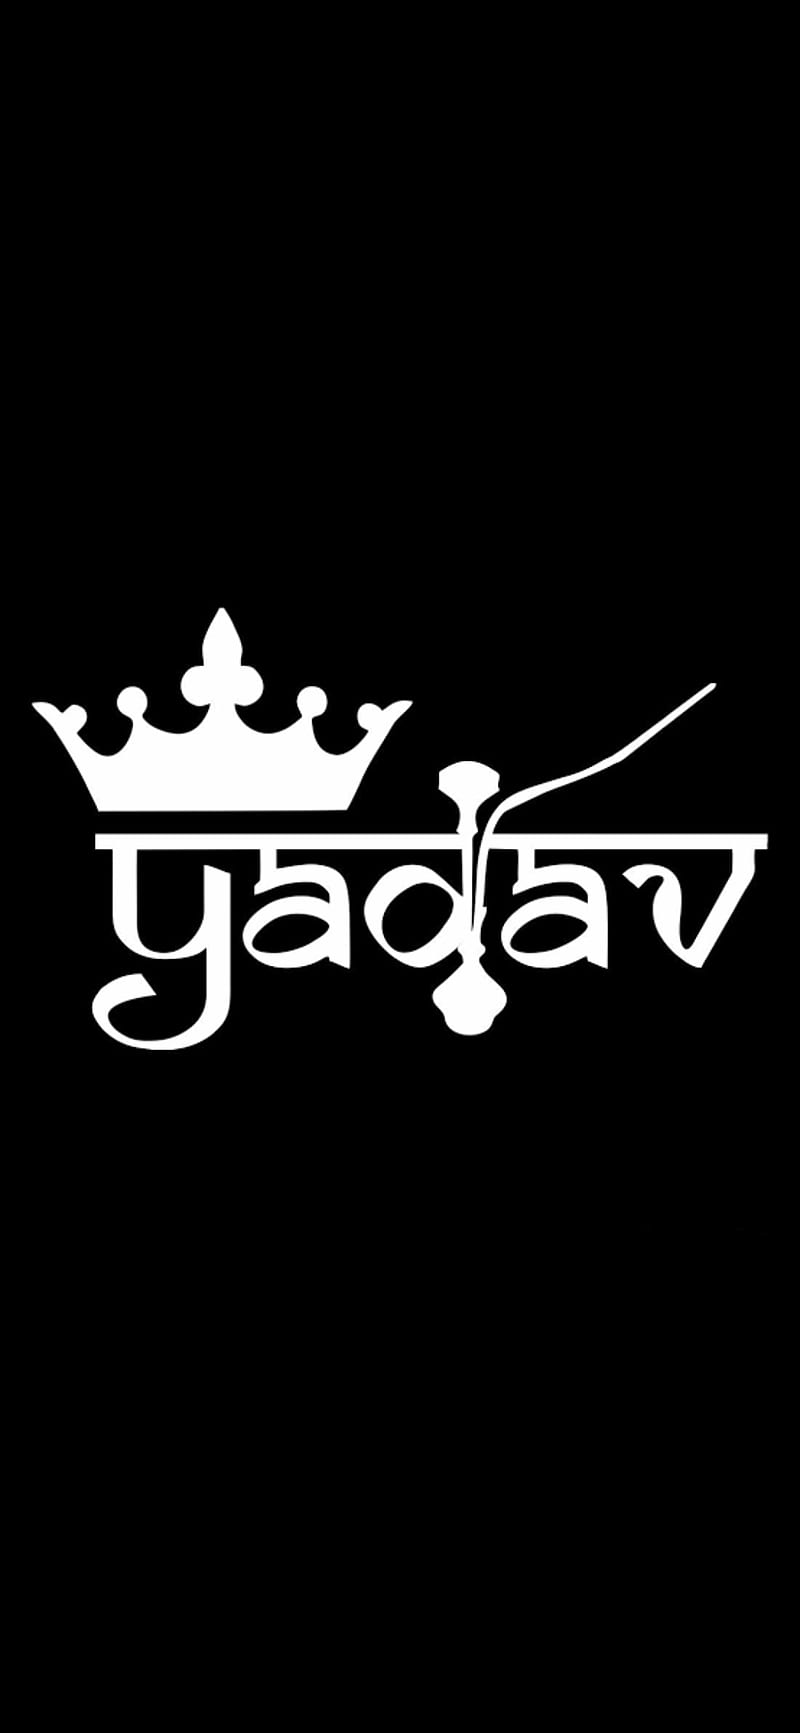 Ahir  ahir logo  yadav  raosahab  Name wallpaper Logo wallpaper hd  Yadav name wallpaper hd